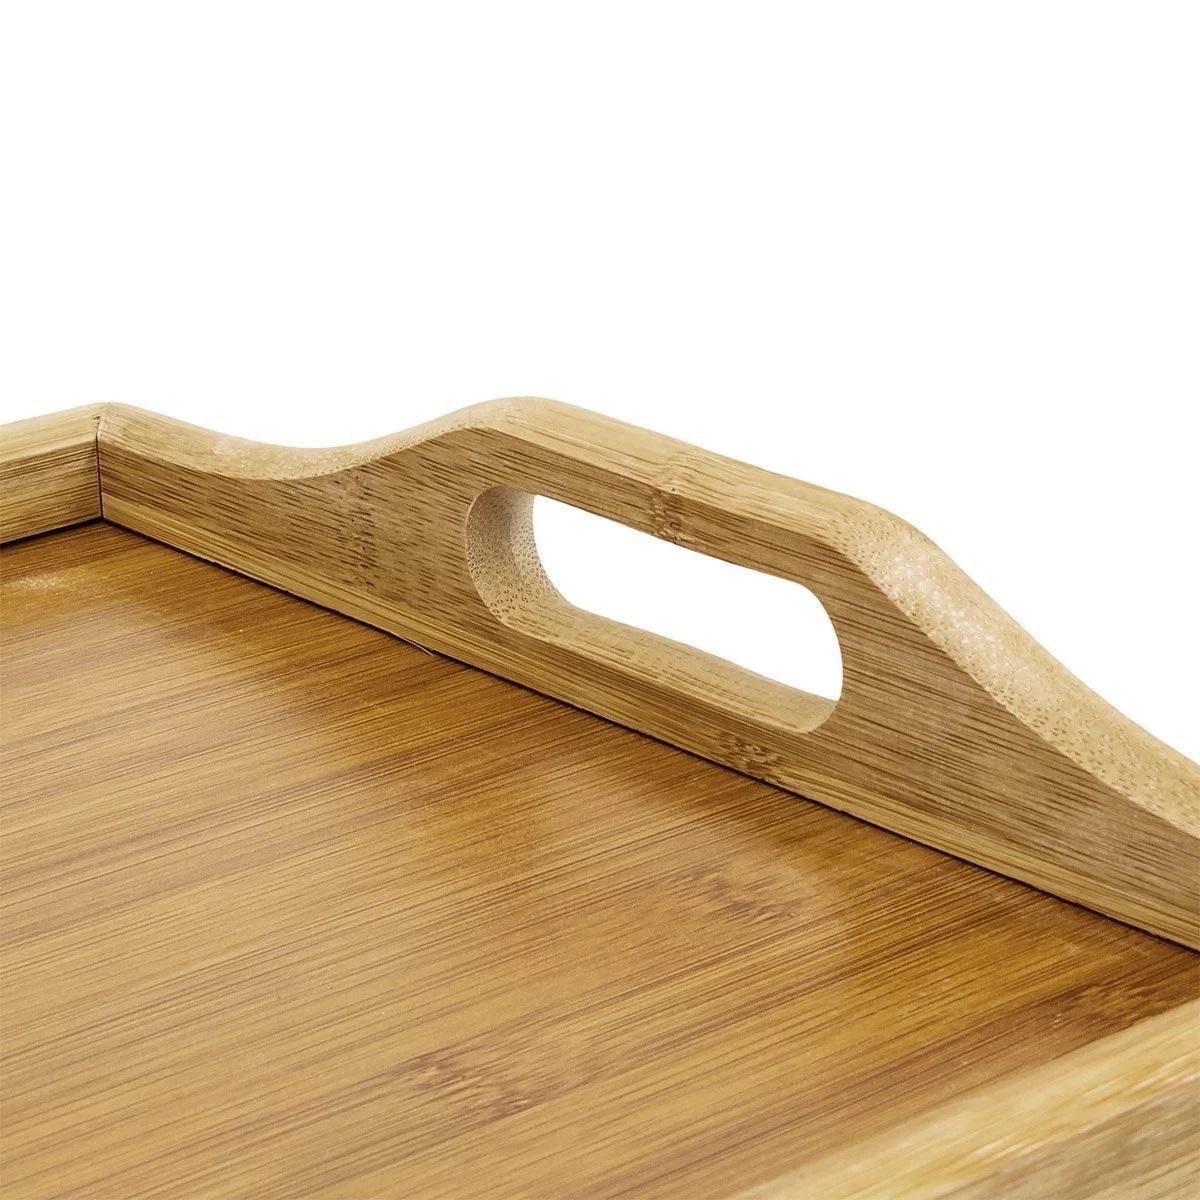 Фото 2 Бамбуковый столик для завтрака с ручками, накроватный поднос со складными ножками UFT TB01